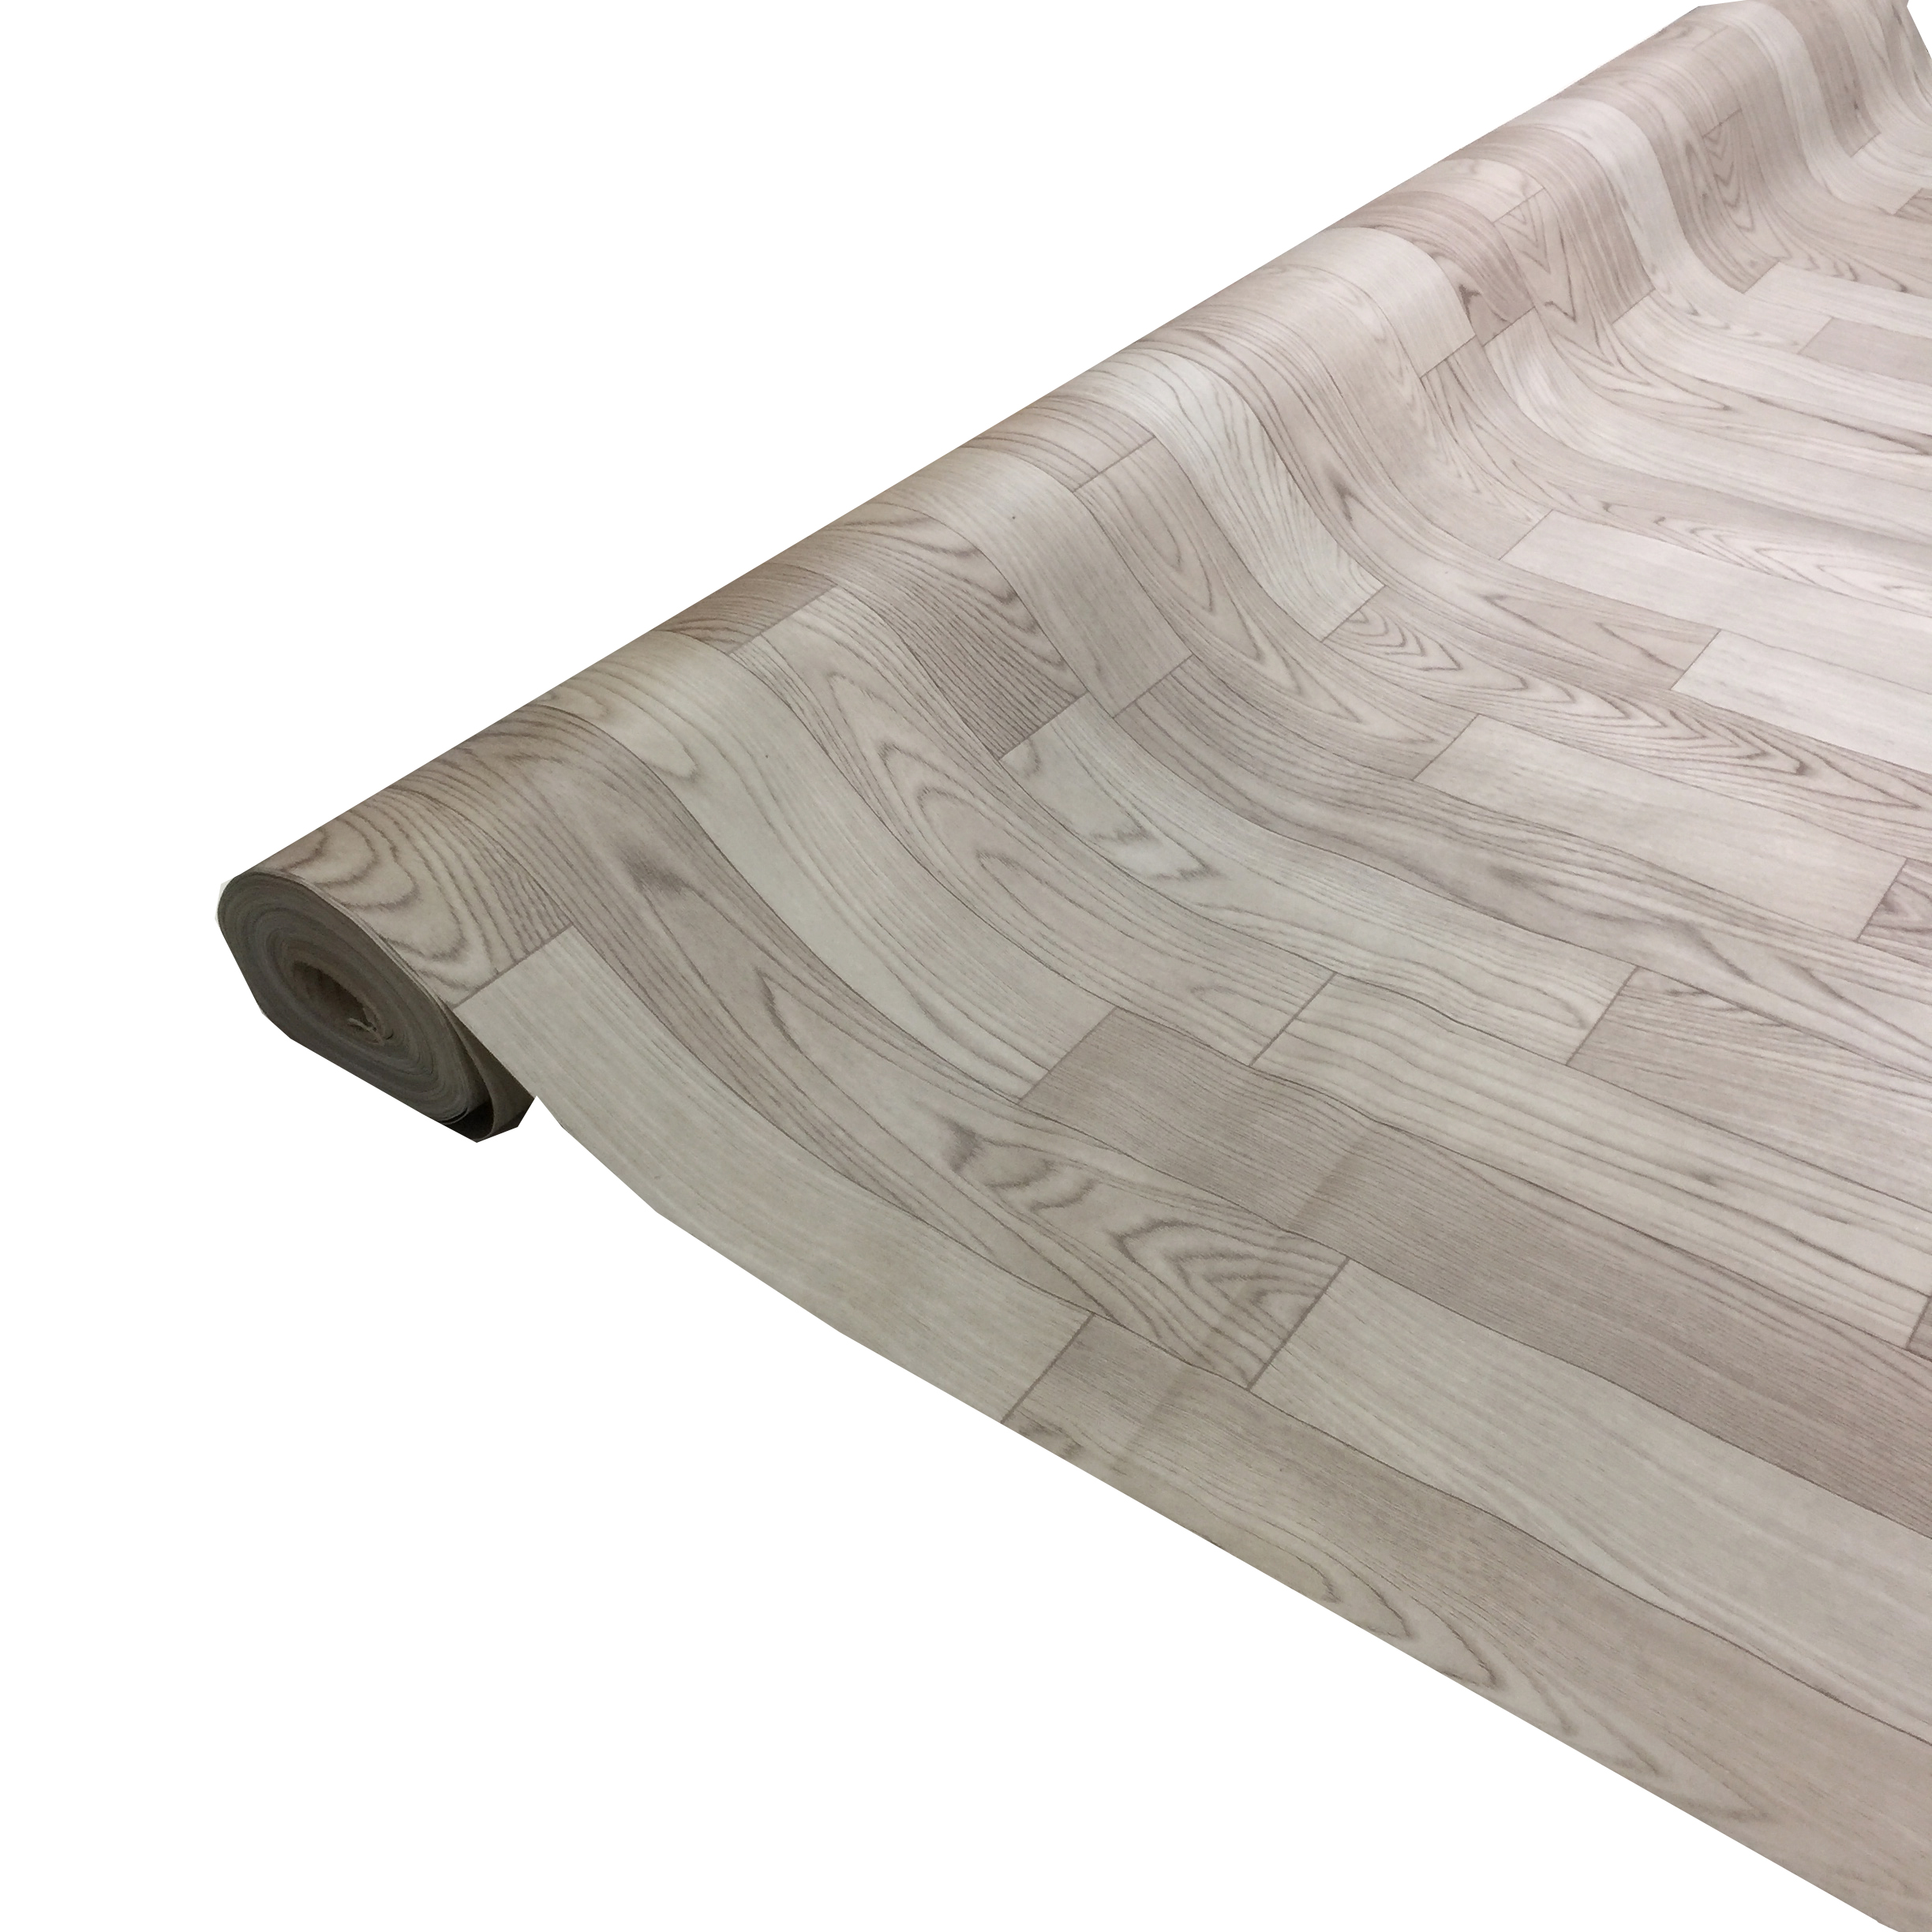 Simili trải sàn vân gỗ màu xám nhạt mẫu mới - bề mặt có vân nhám như gỗ thật